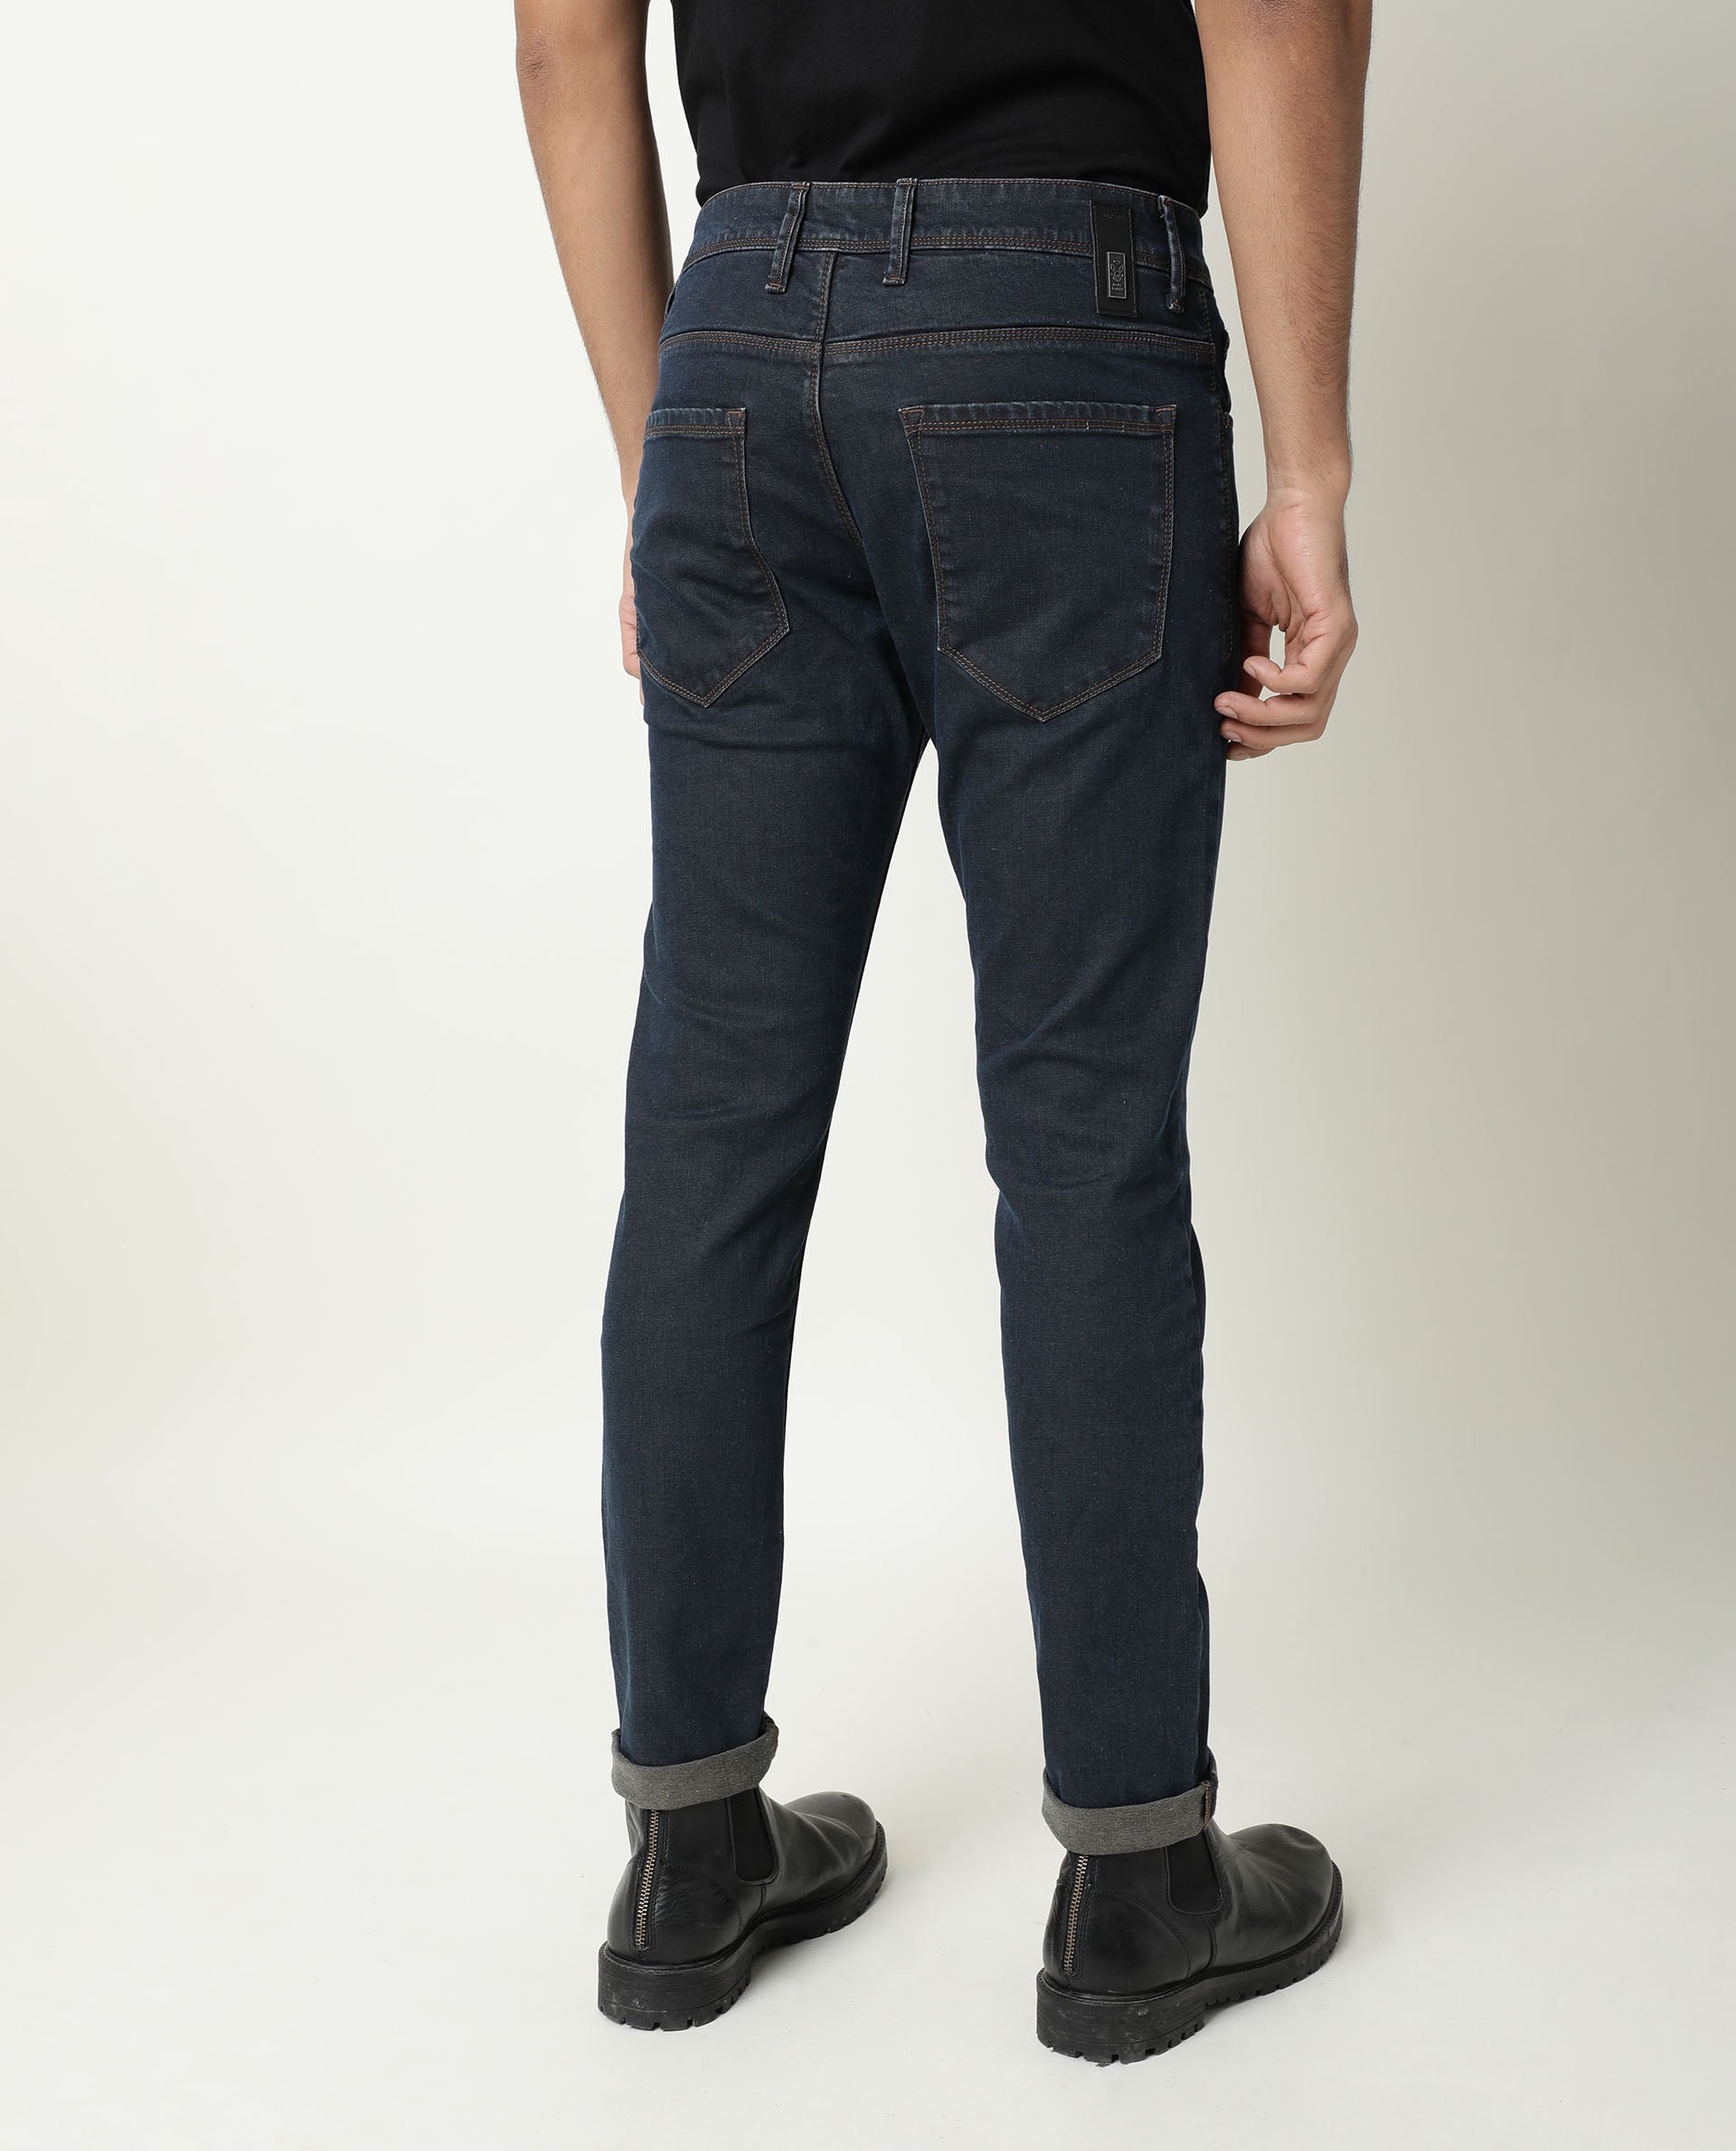 Buy Men Brown Dark Wash Skinny Fit Jeans Online - 762760 | Van Heusen